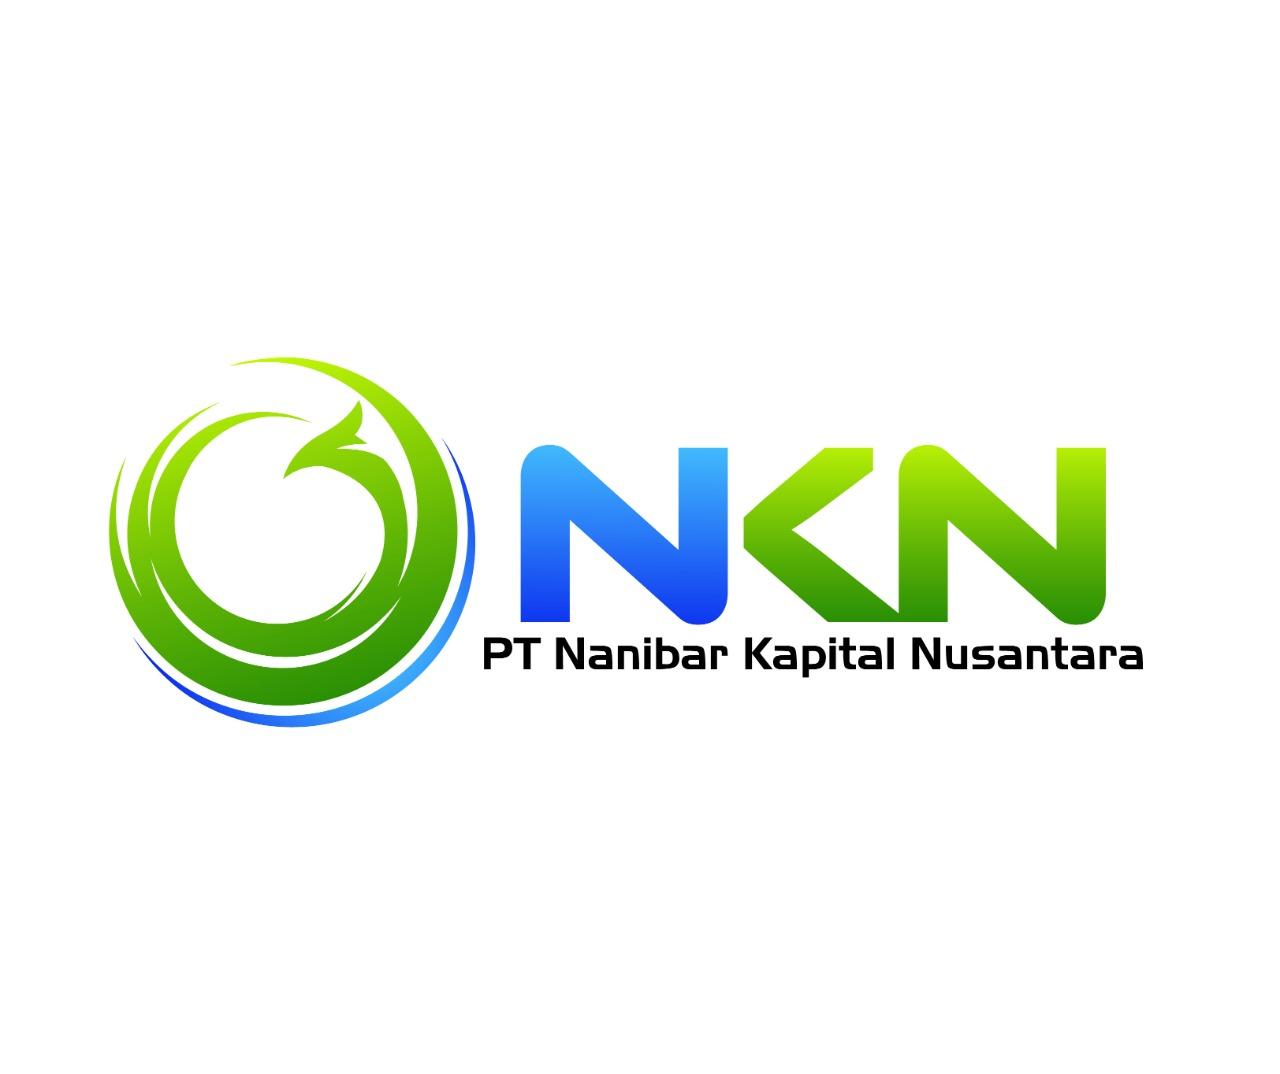 Pt. Nanibar Kapital Nusantara